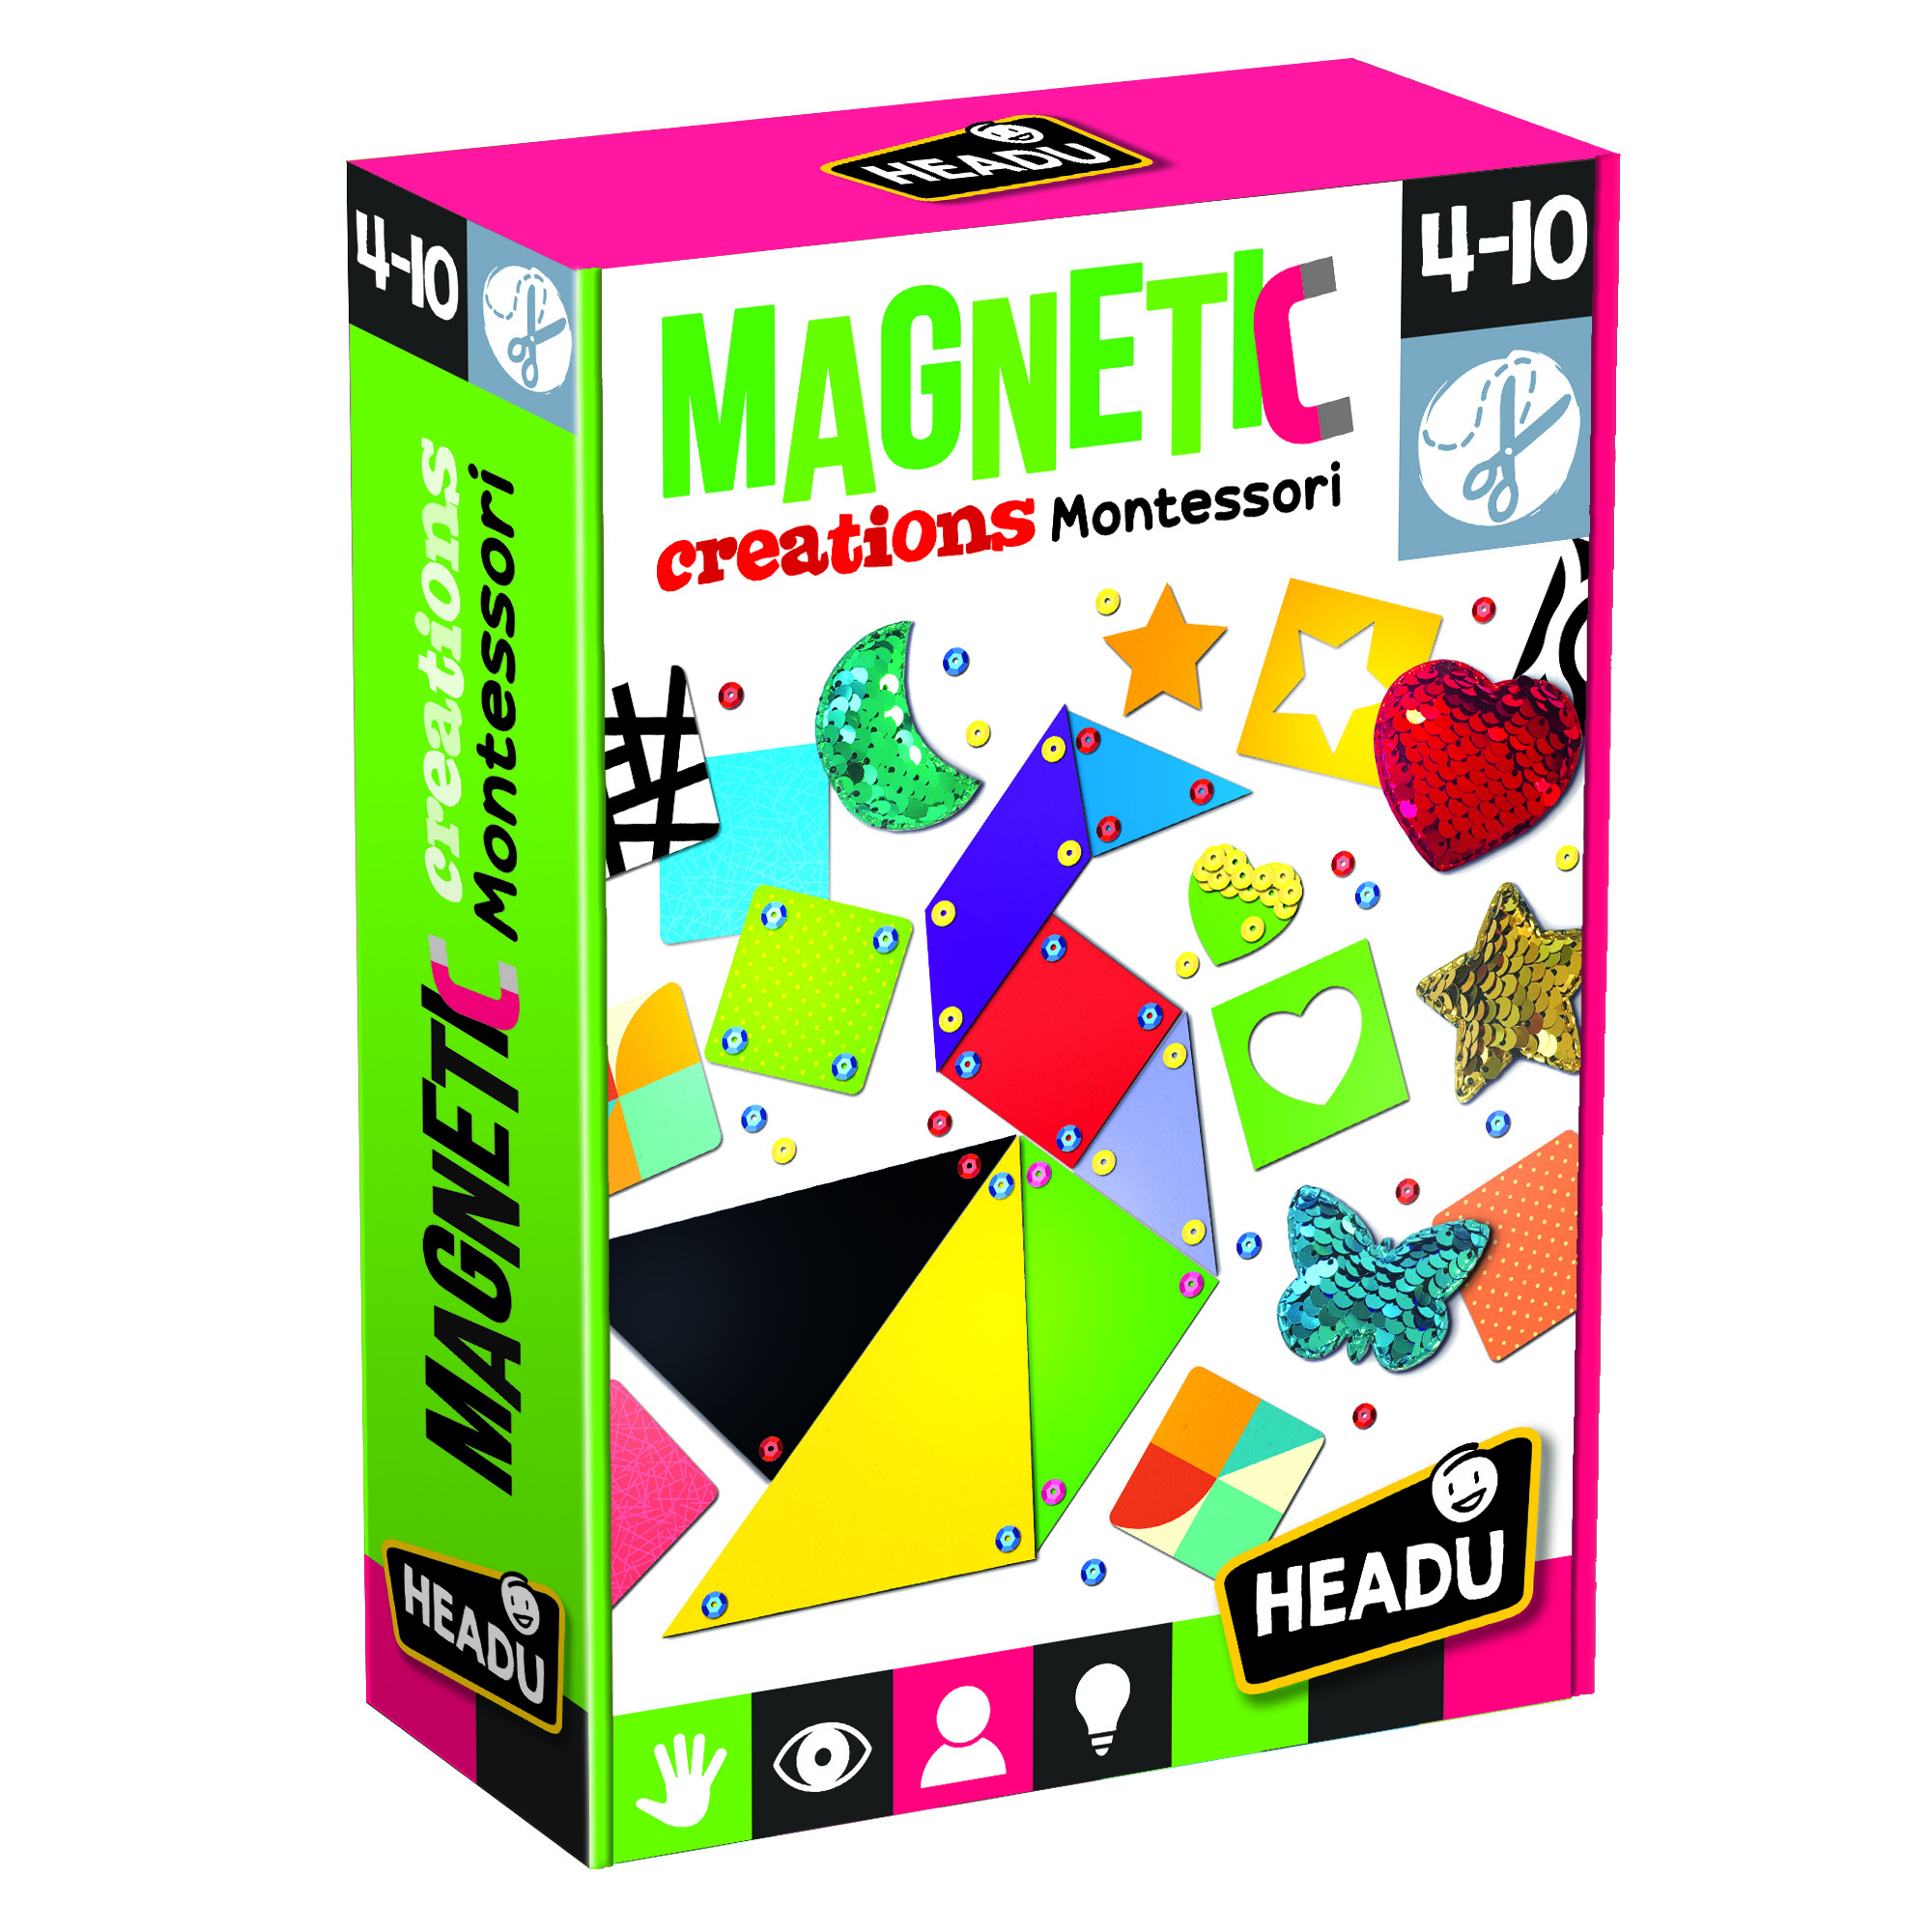 MAGNETIC CREATIONS - Bộ đồ chơi thủ công giúp thỏa sức sáng tạo nghệ thuật cho bé từ 4-10 tuổi